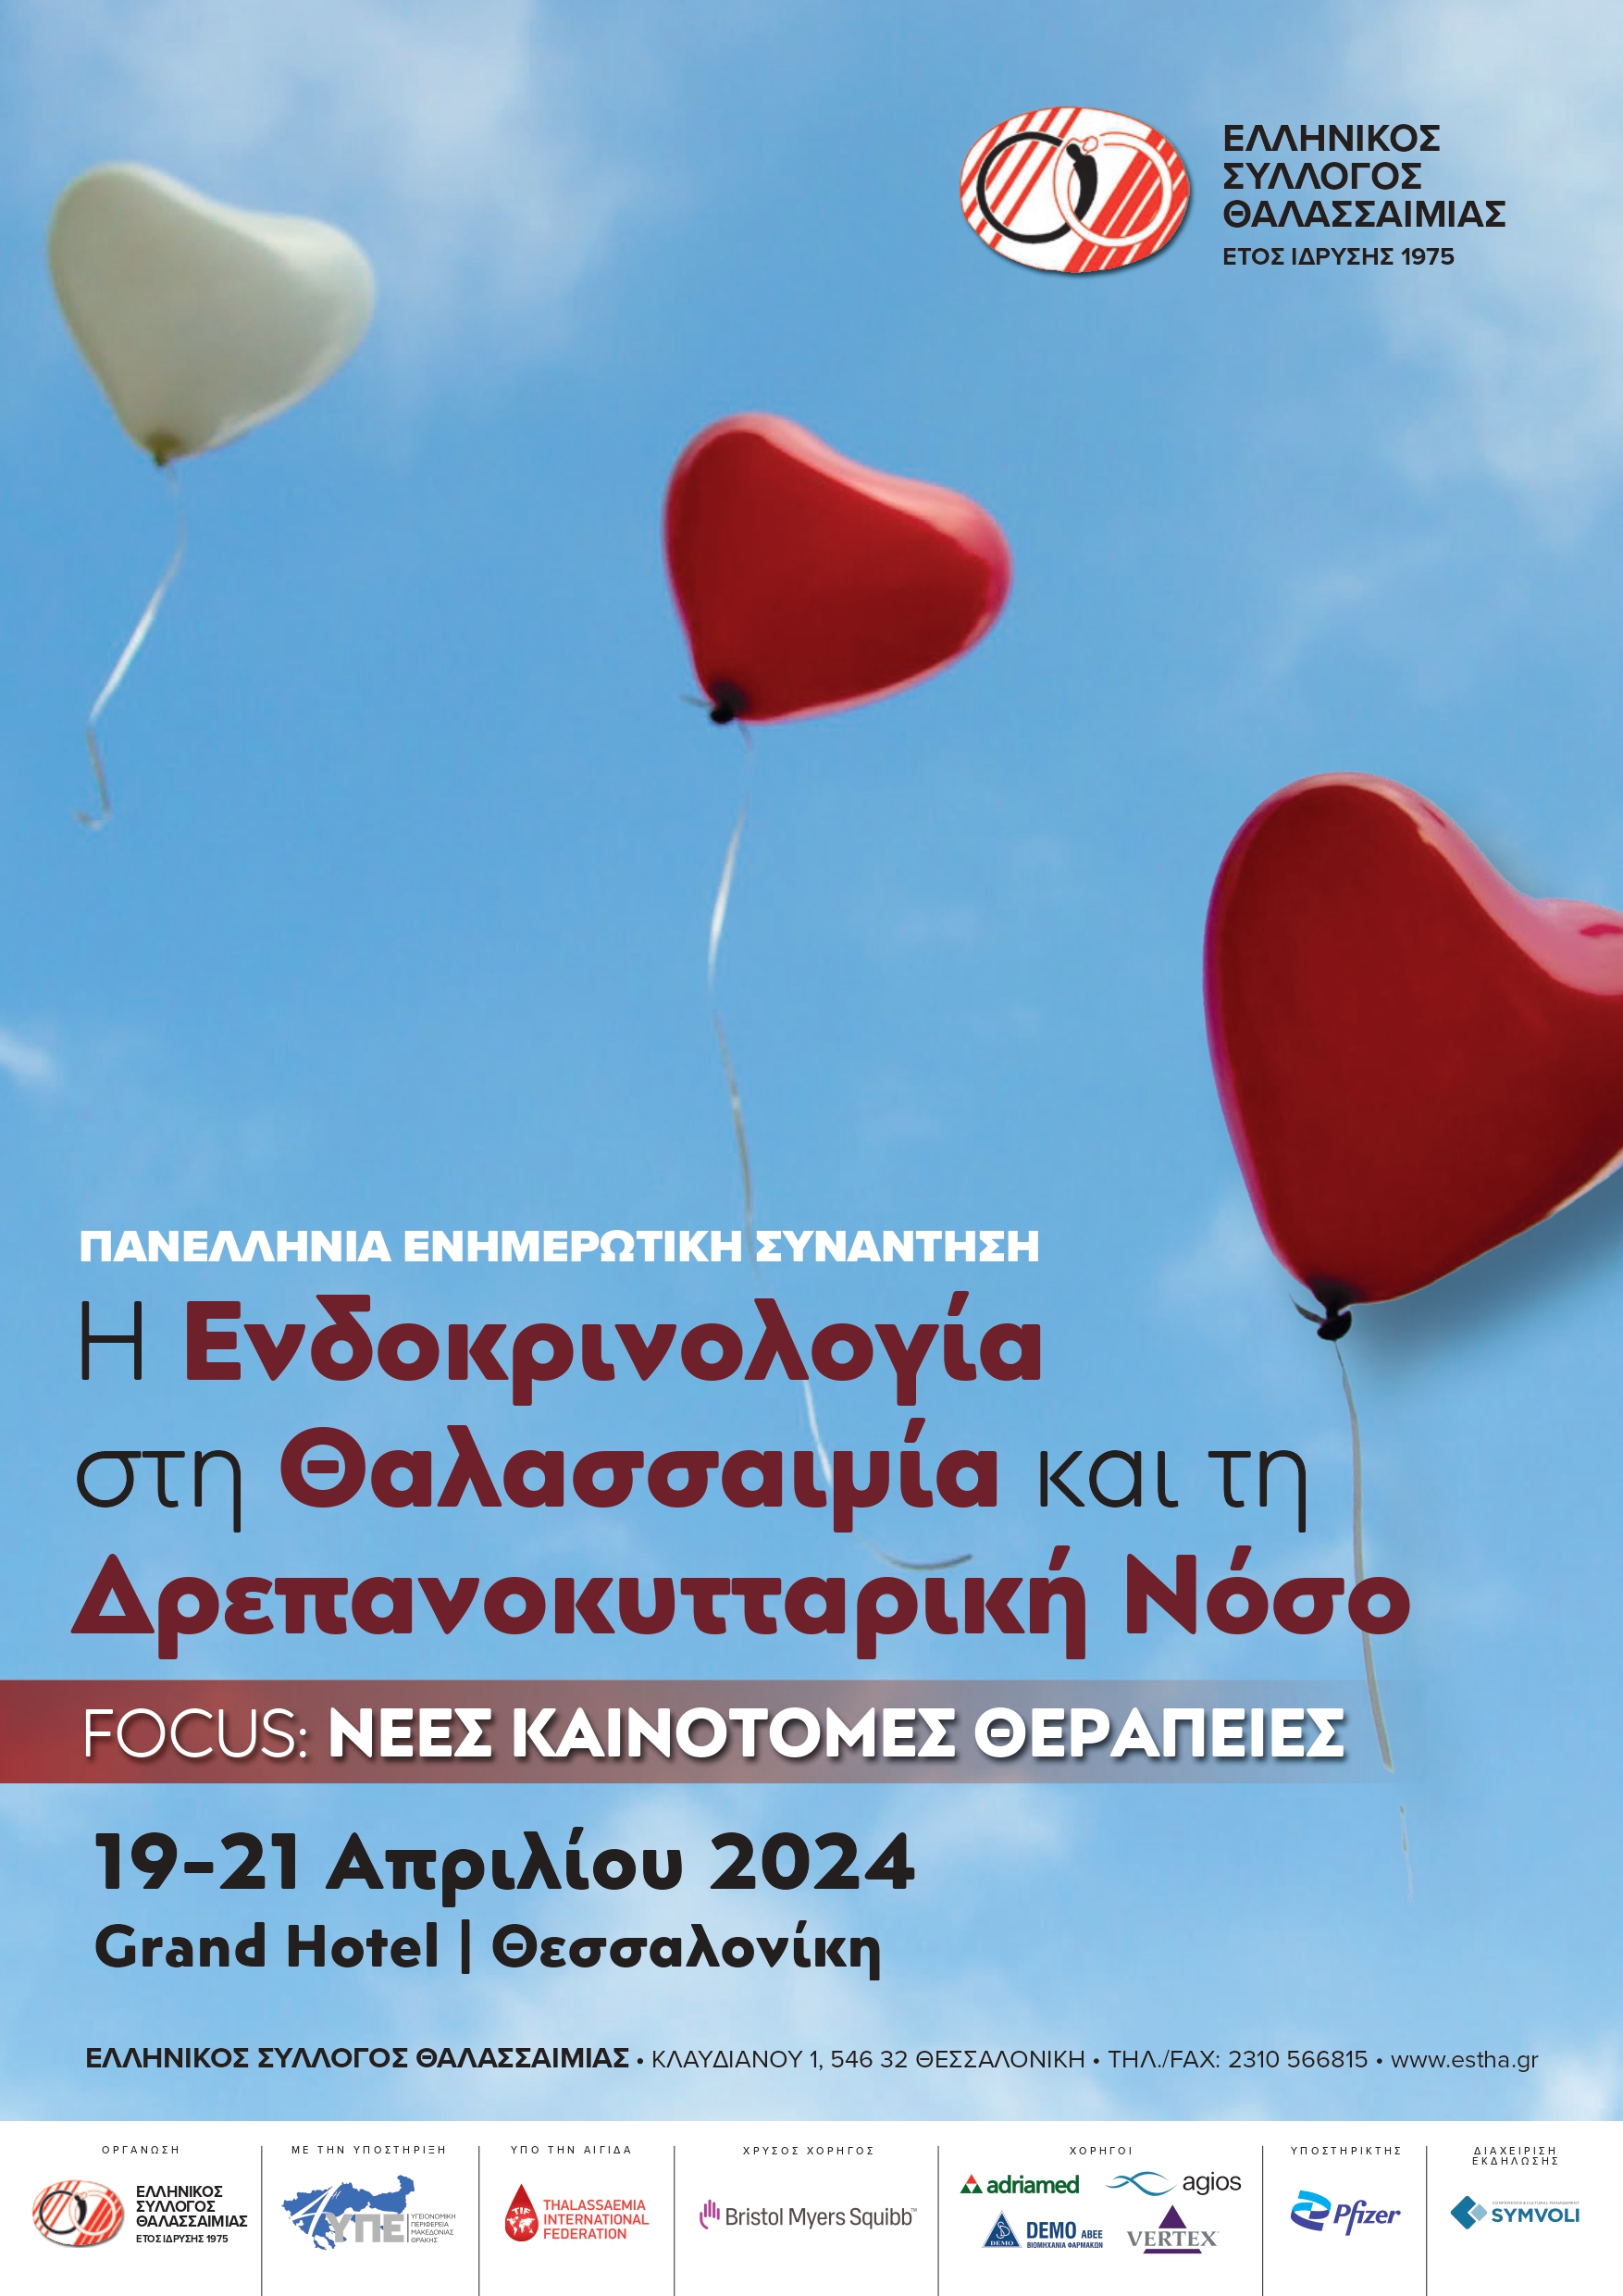 Δελτίο Τύπου - Πανελλήνια Εκδήλωση του Ελληνικού Συλλόγου Θαλασσαιμίας